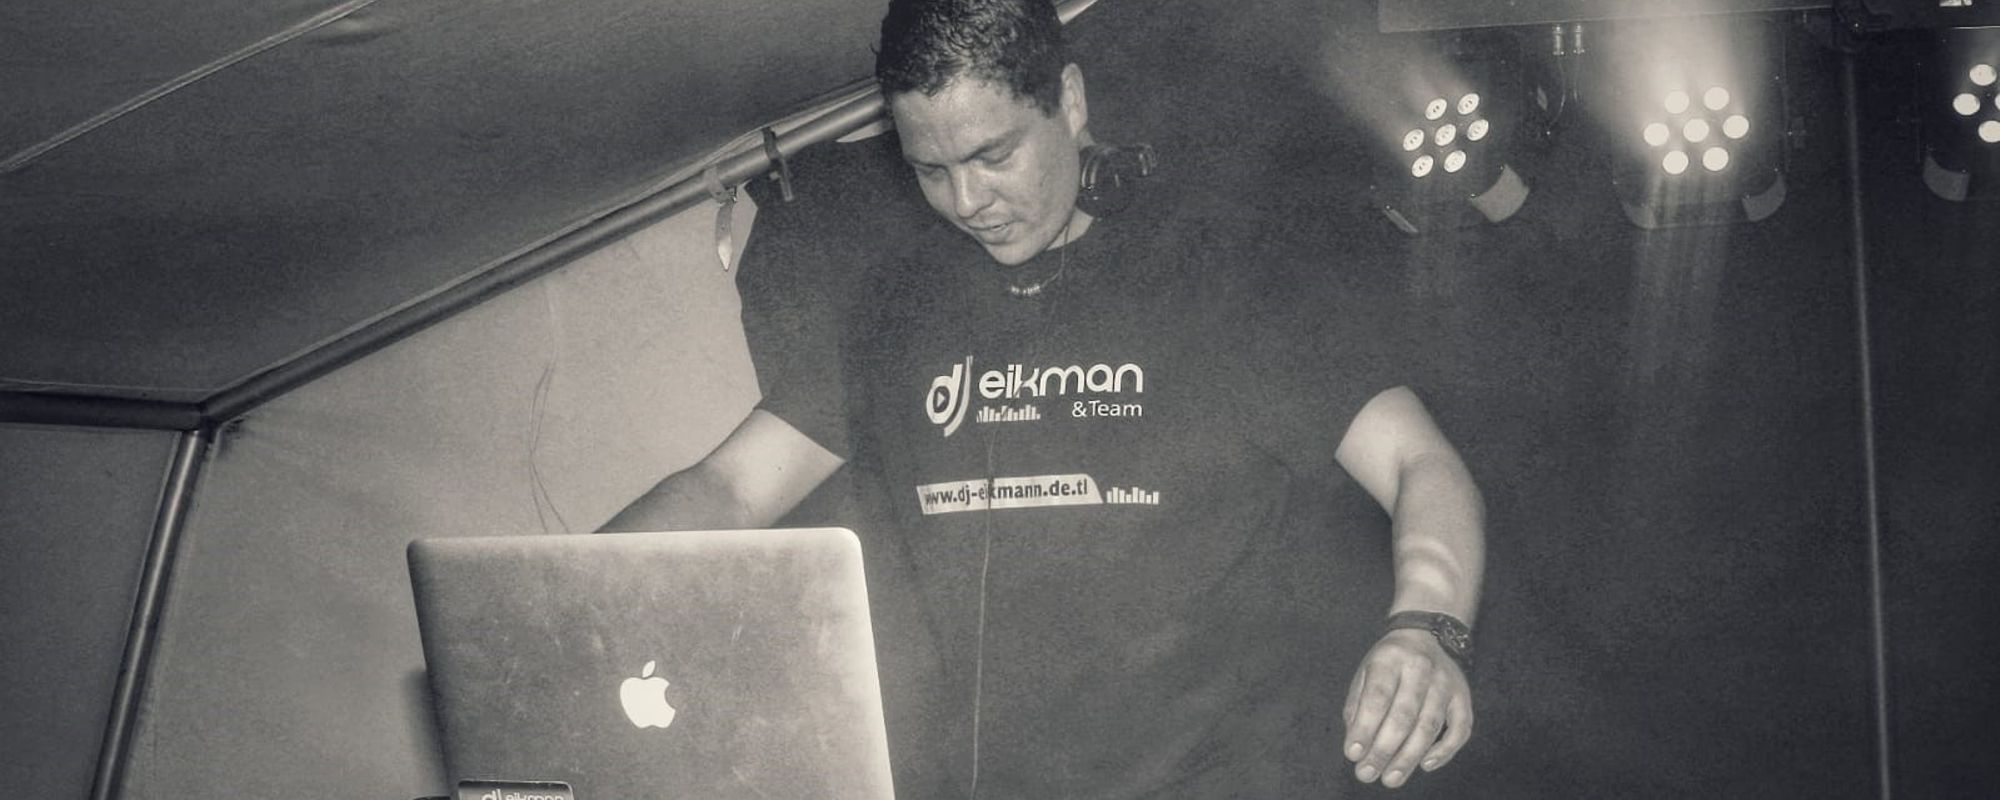 DJ Eikmann